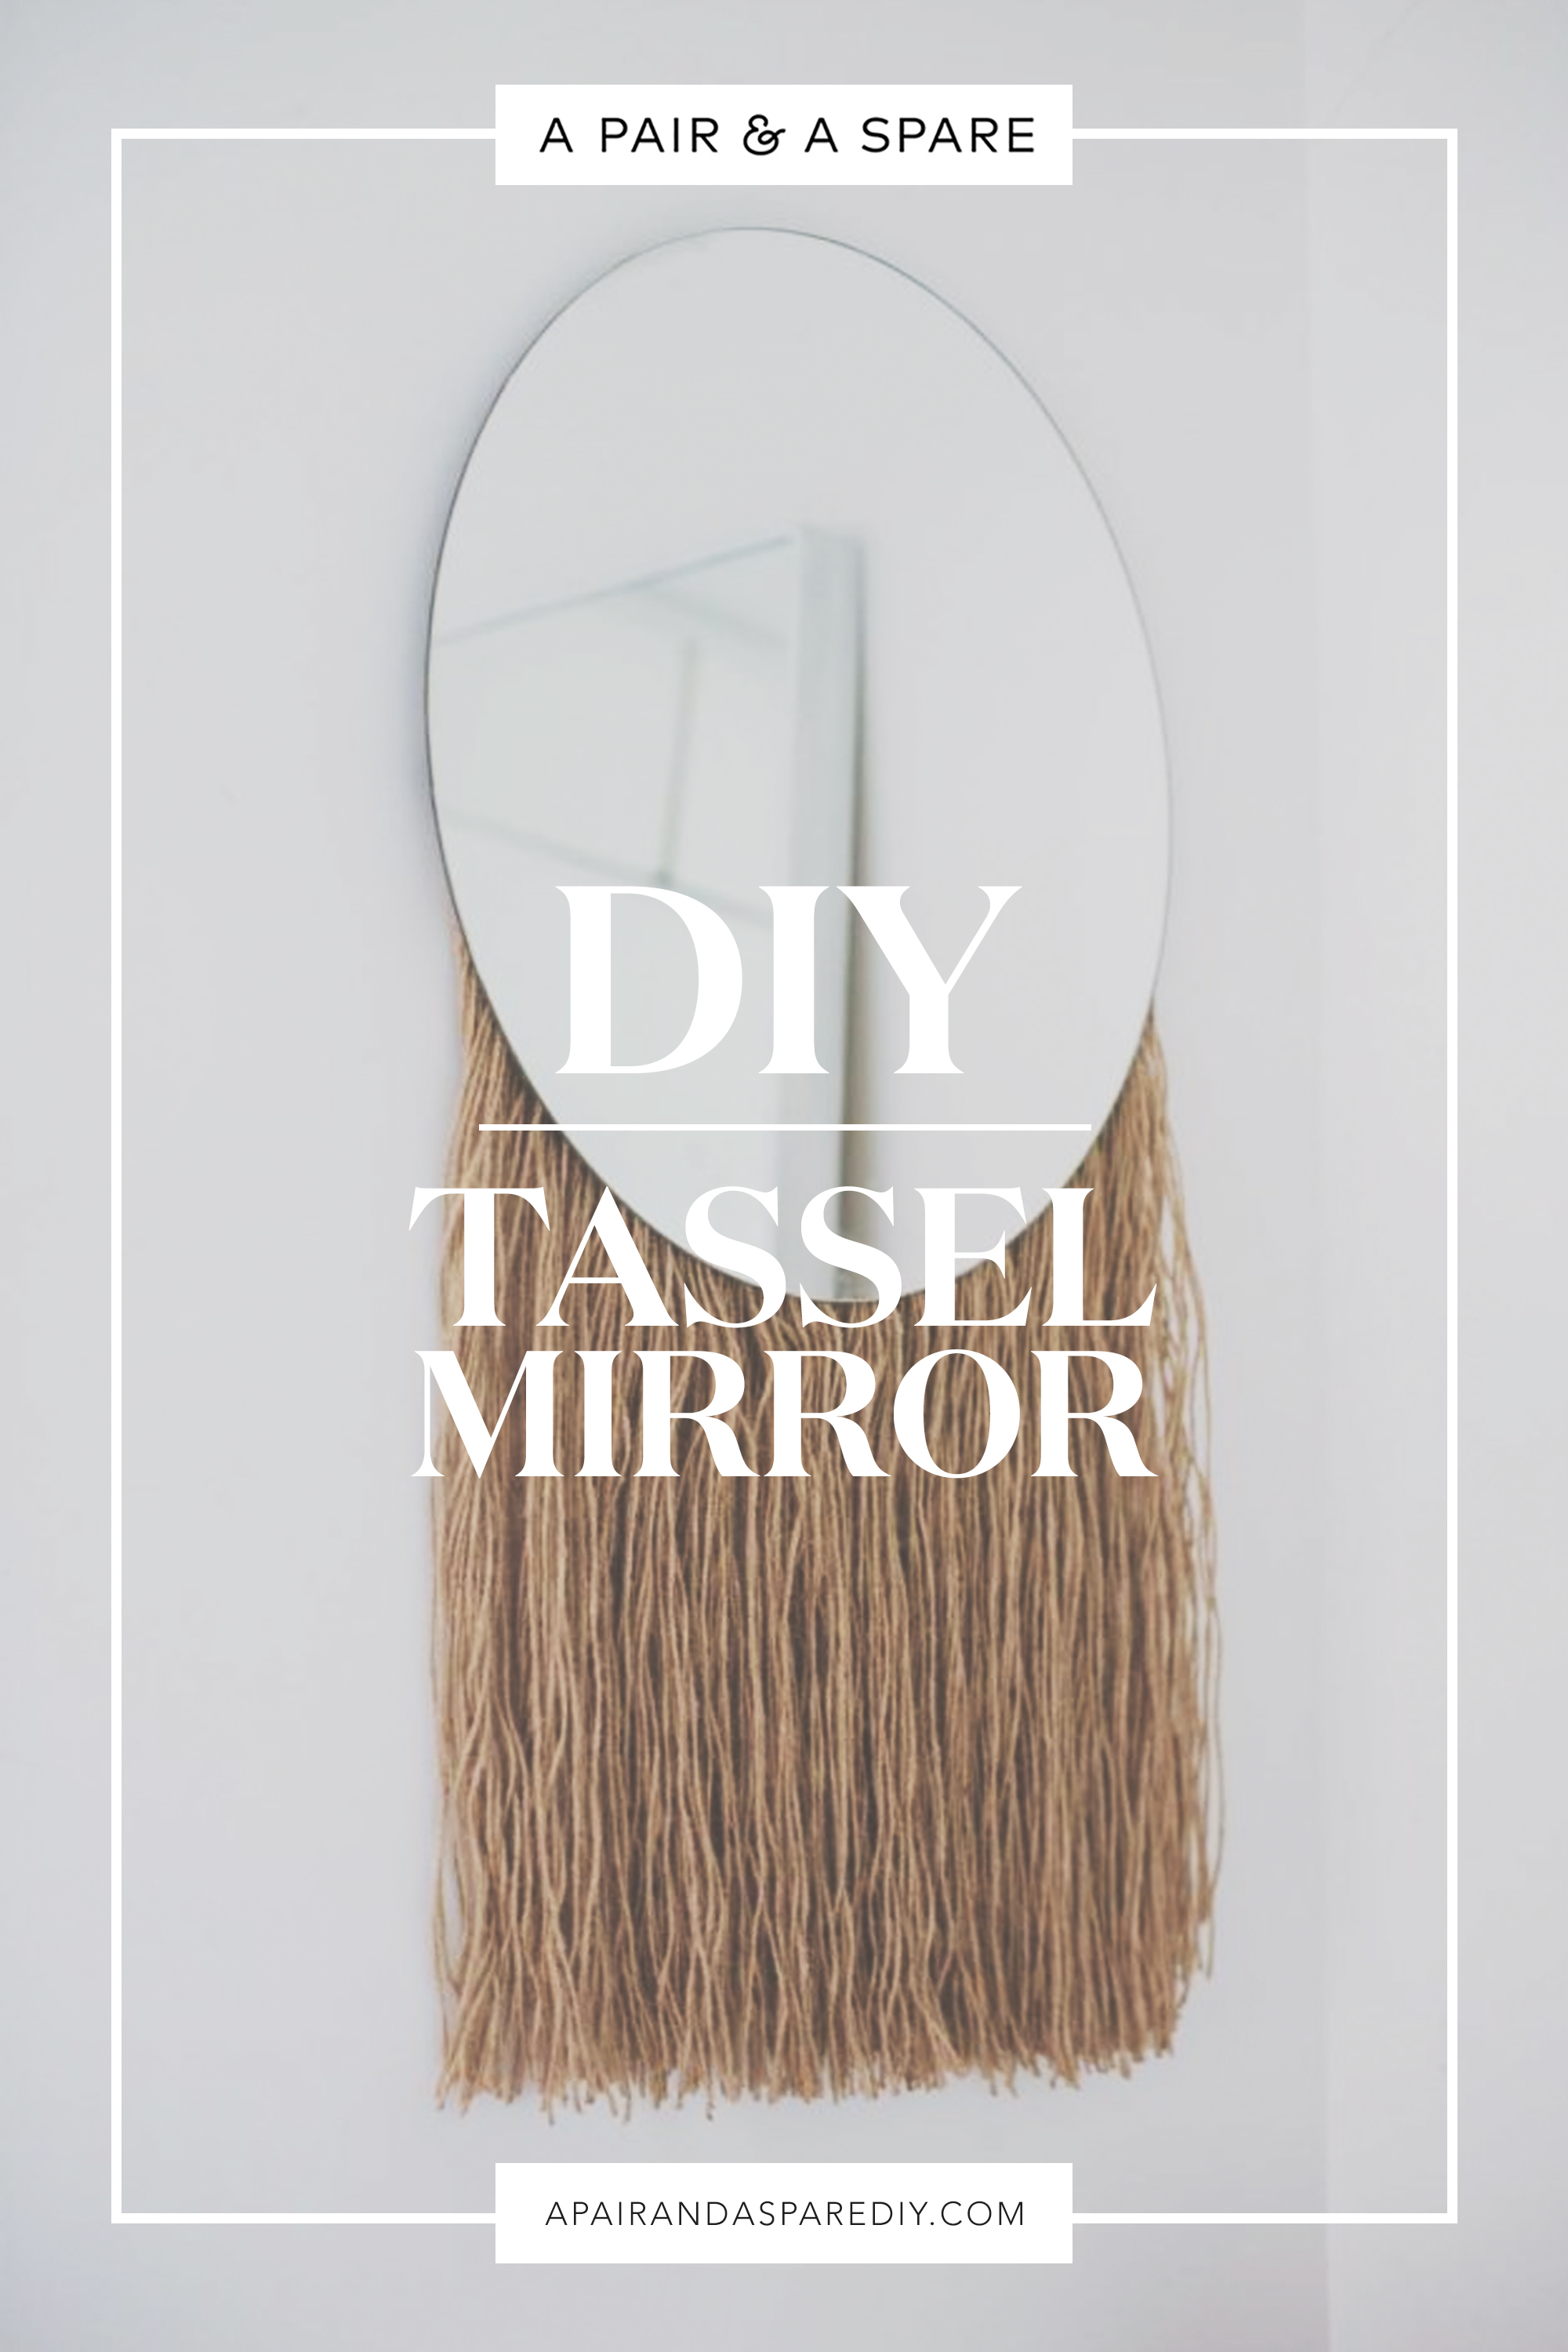 DIY Fringed Mirror